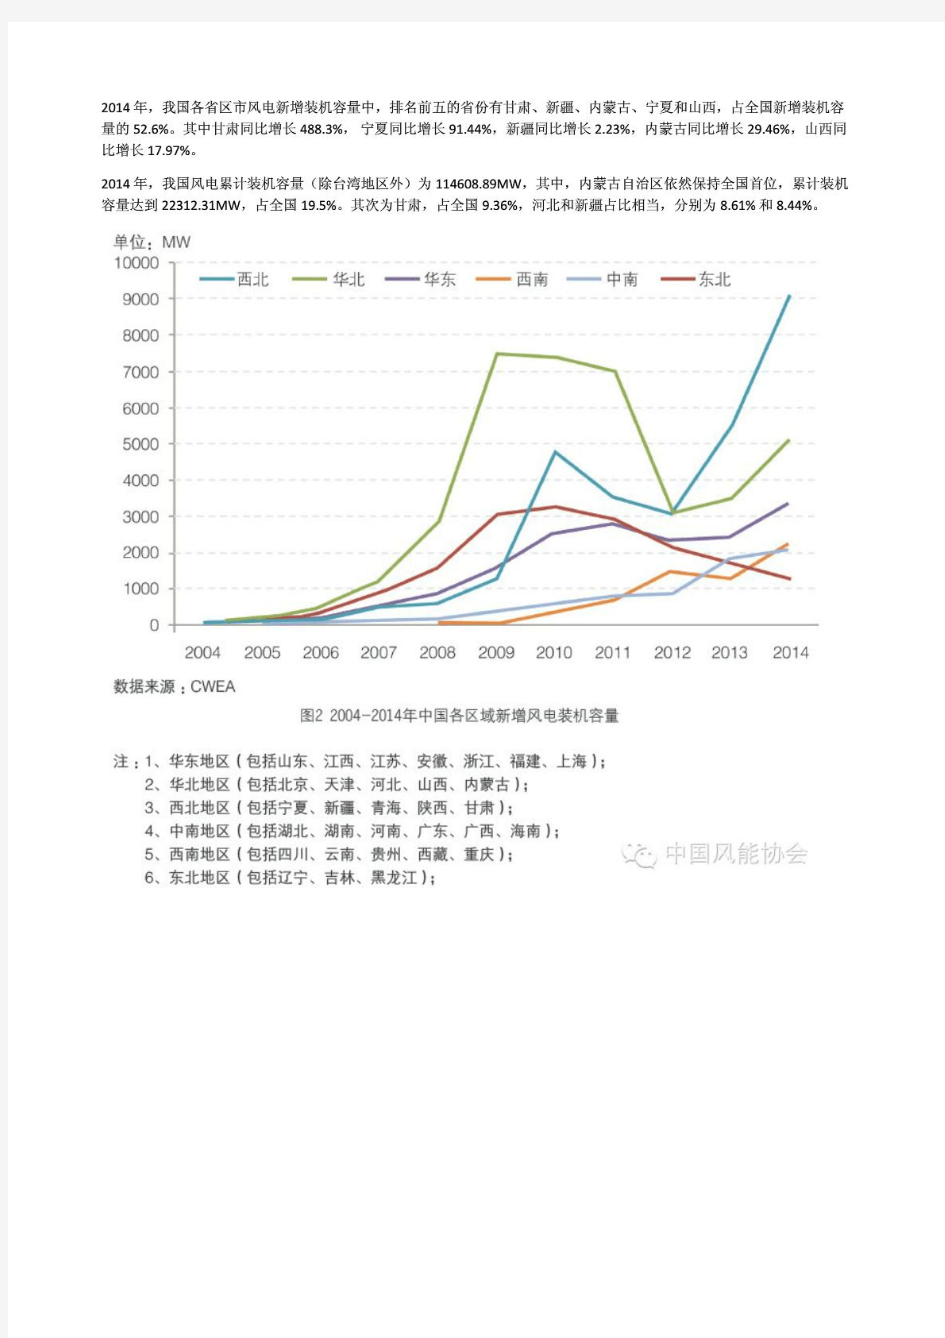 2014年中国风电装机容量统计完整版